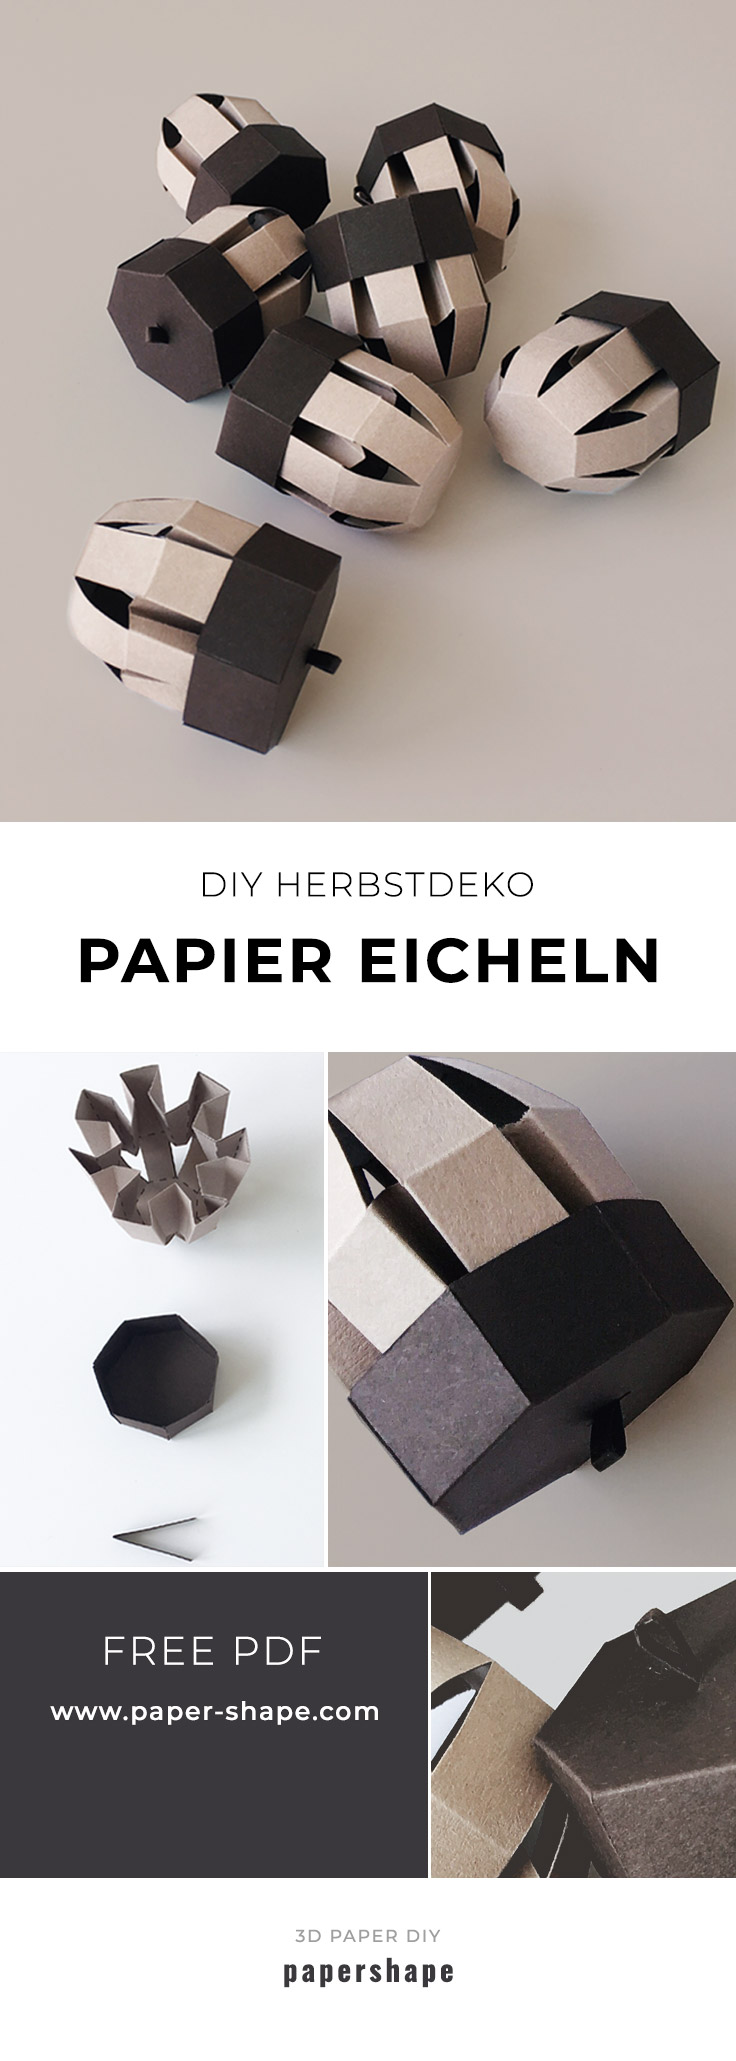 DIY Eicheln aus Papier als coole Herbstdeko / fall basteln und dekorieren (kostenlose Vorlage). PaperShape #diy #papershape #herbstdeko'